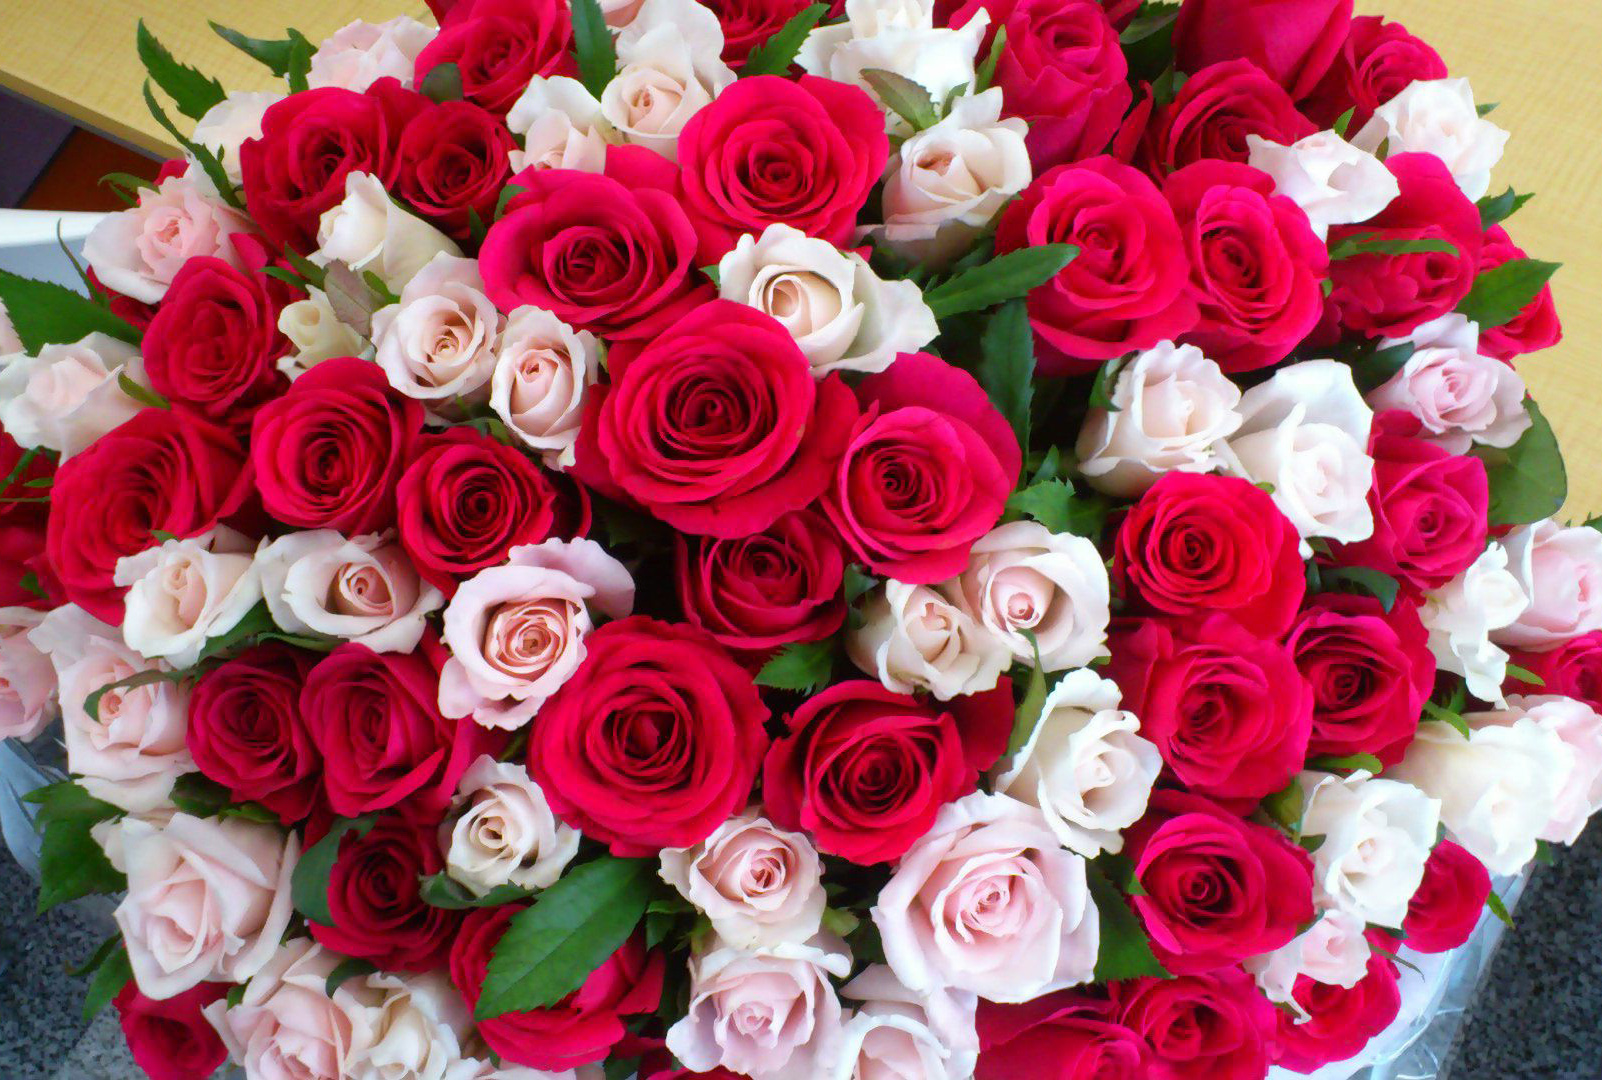 Шикарный букет роз в день рождения